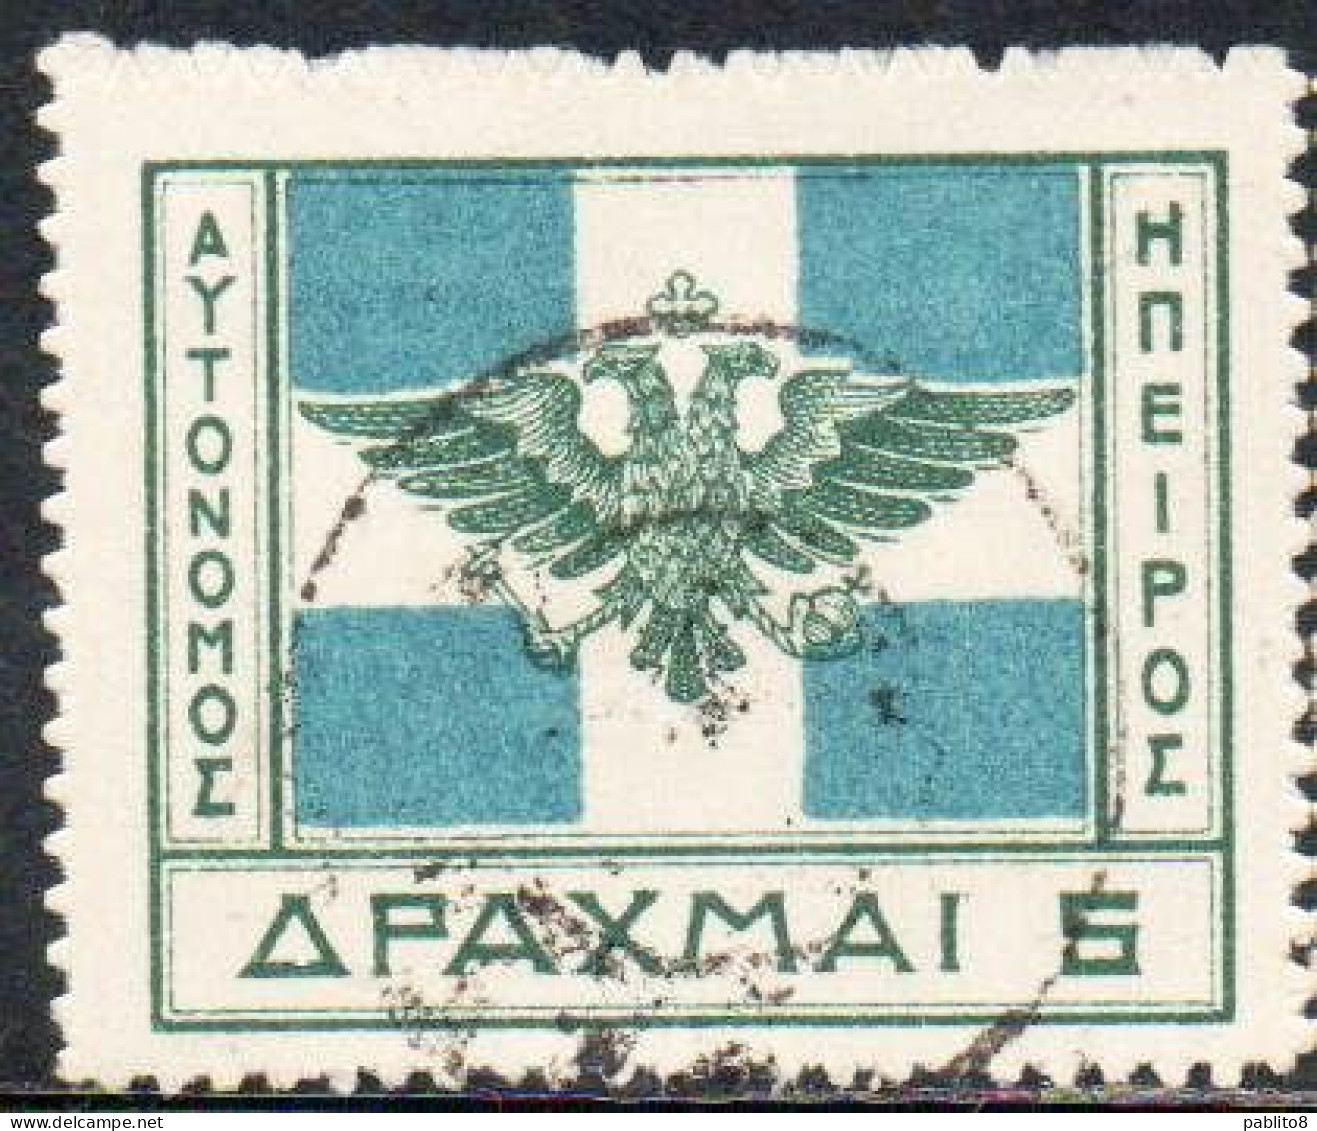 GREECE GRECIA HELLAS EPIRUS EPIRO 1914 ARMS FLAG 5d USED USATO OBLITERE' - Epirus & Albanie